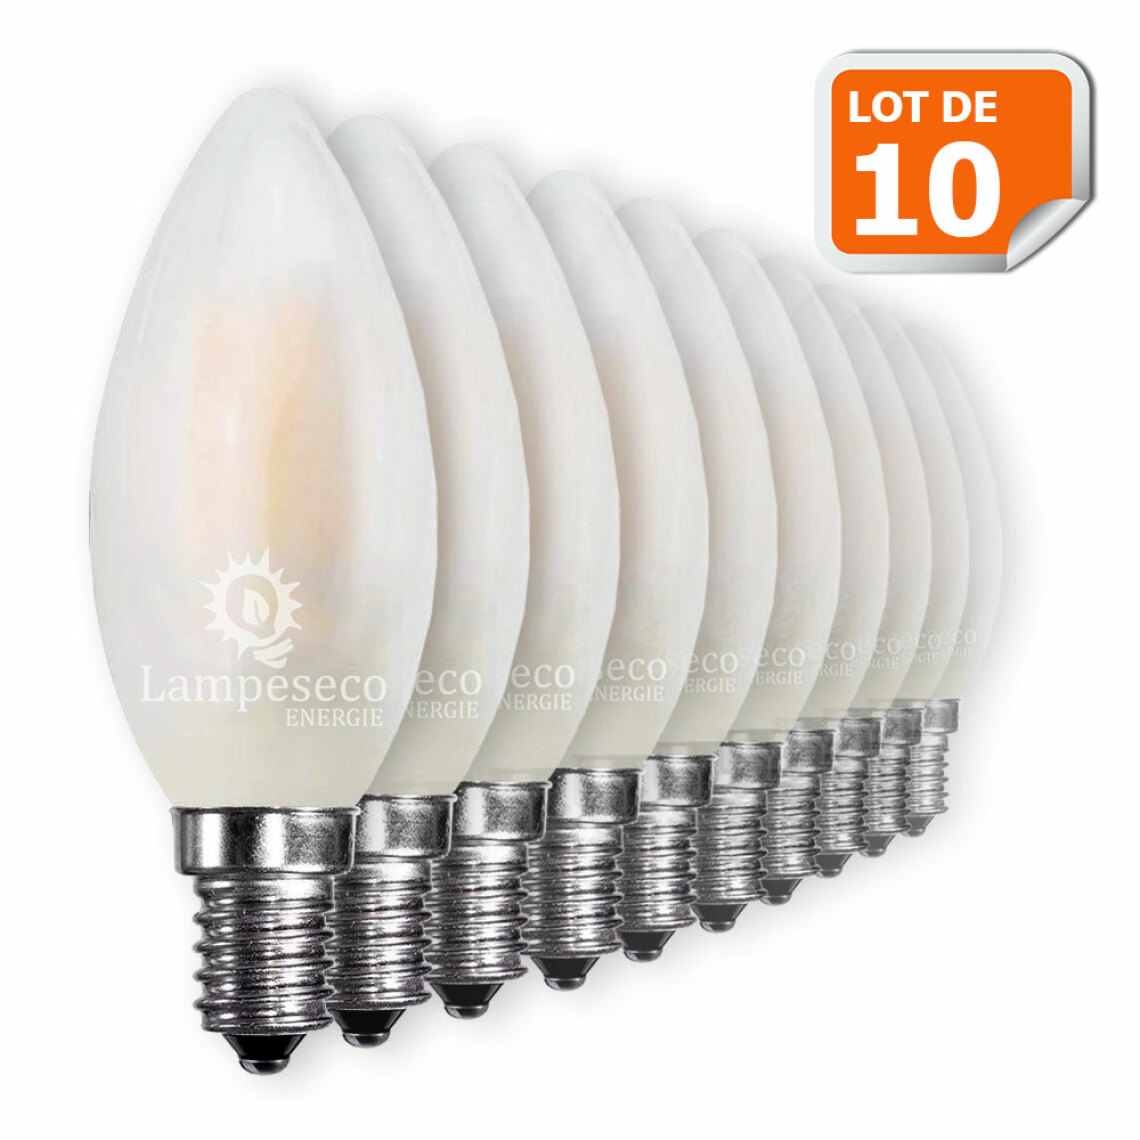 Lampesecoenergie - Lot de 10 Ampoules LED E14 Opaque Filament 4W eq 40W 400lm Blanc Chaud - Ampoules LED